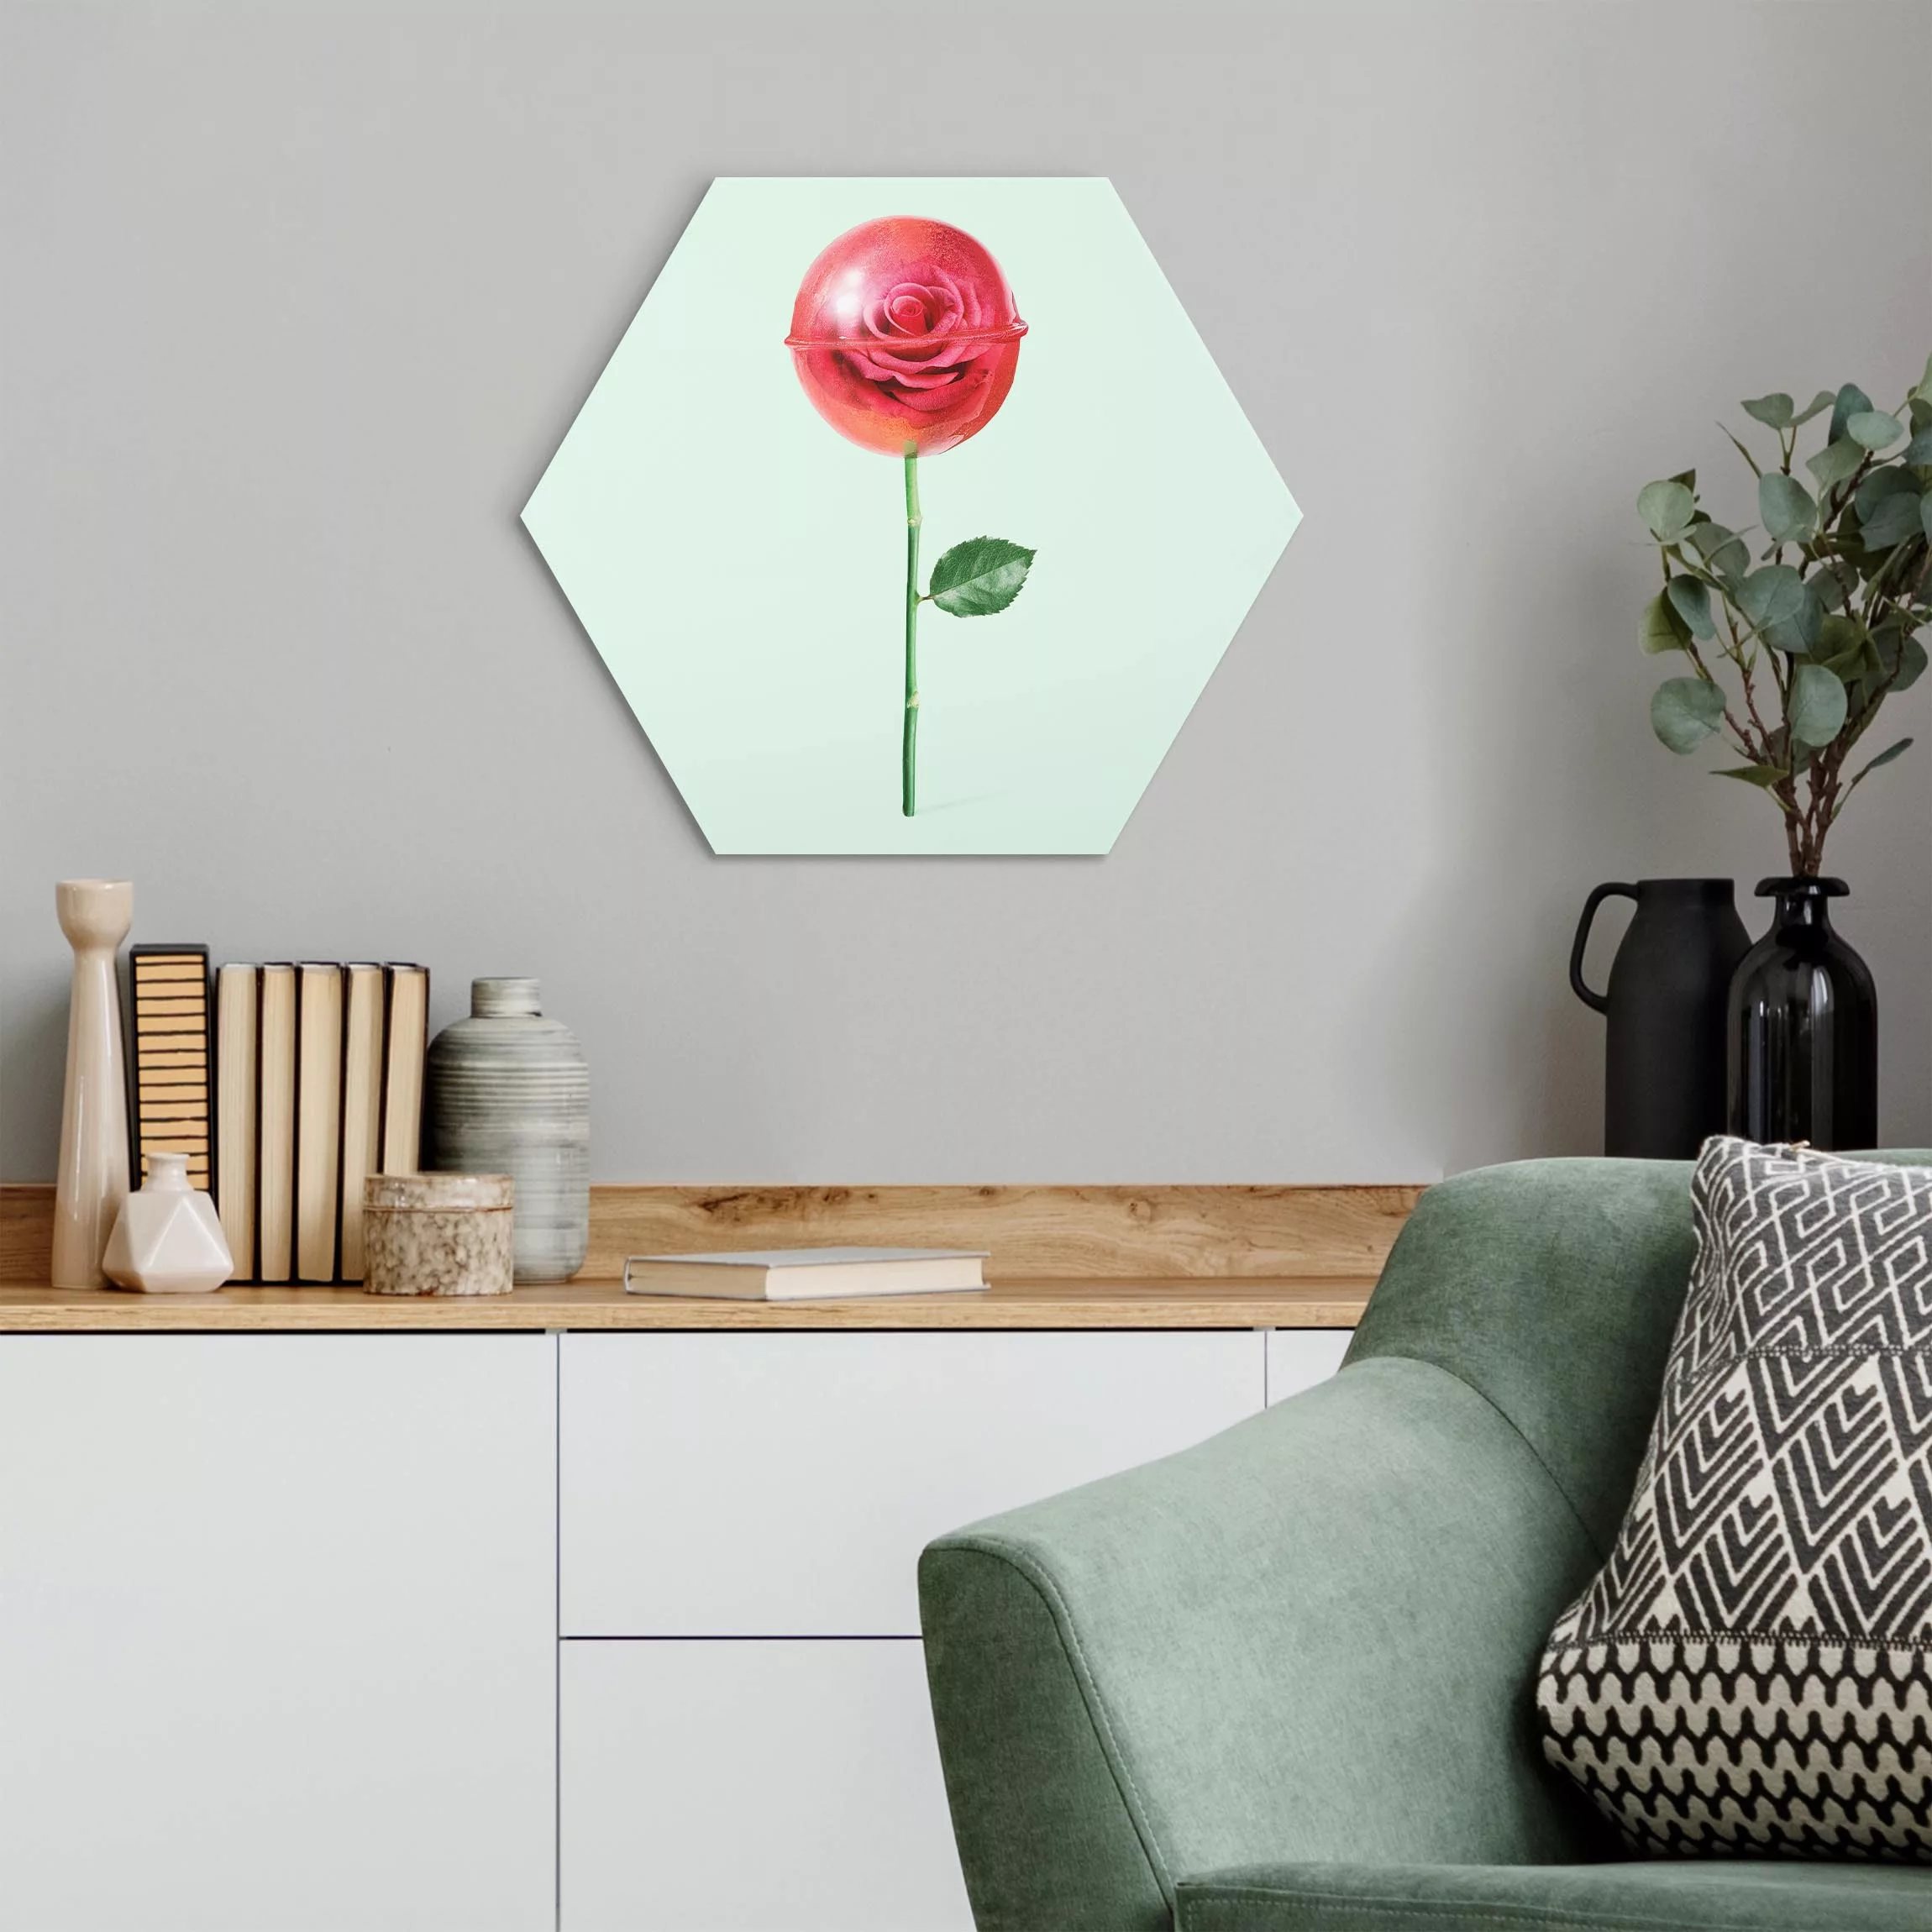 Hexagon-Alu-Dibond Bild Rose mit Lollipop günstig online kaufen